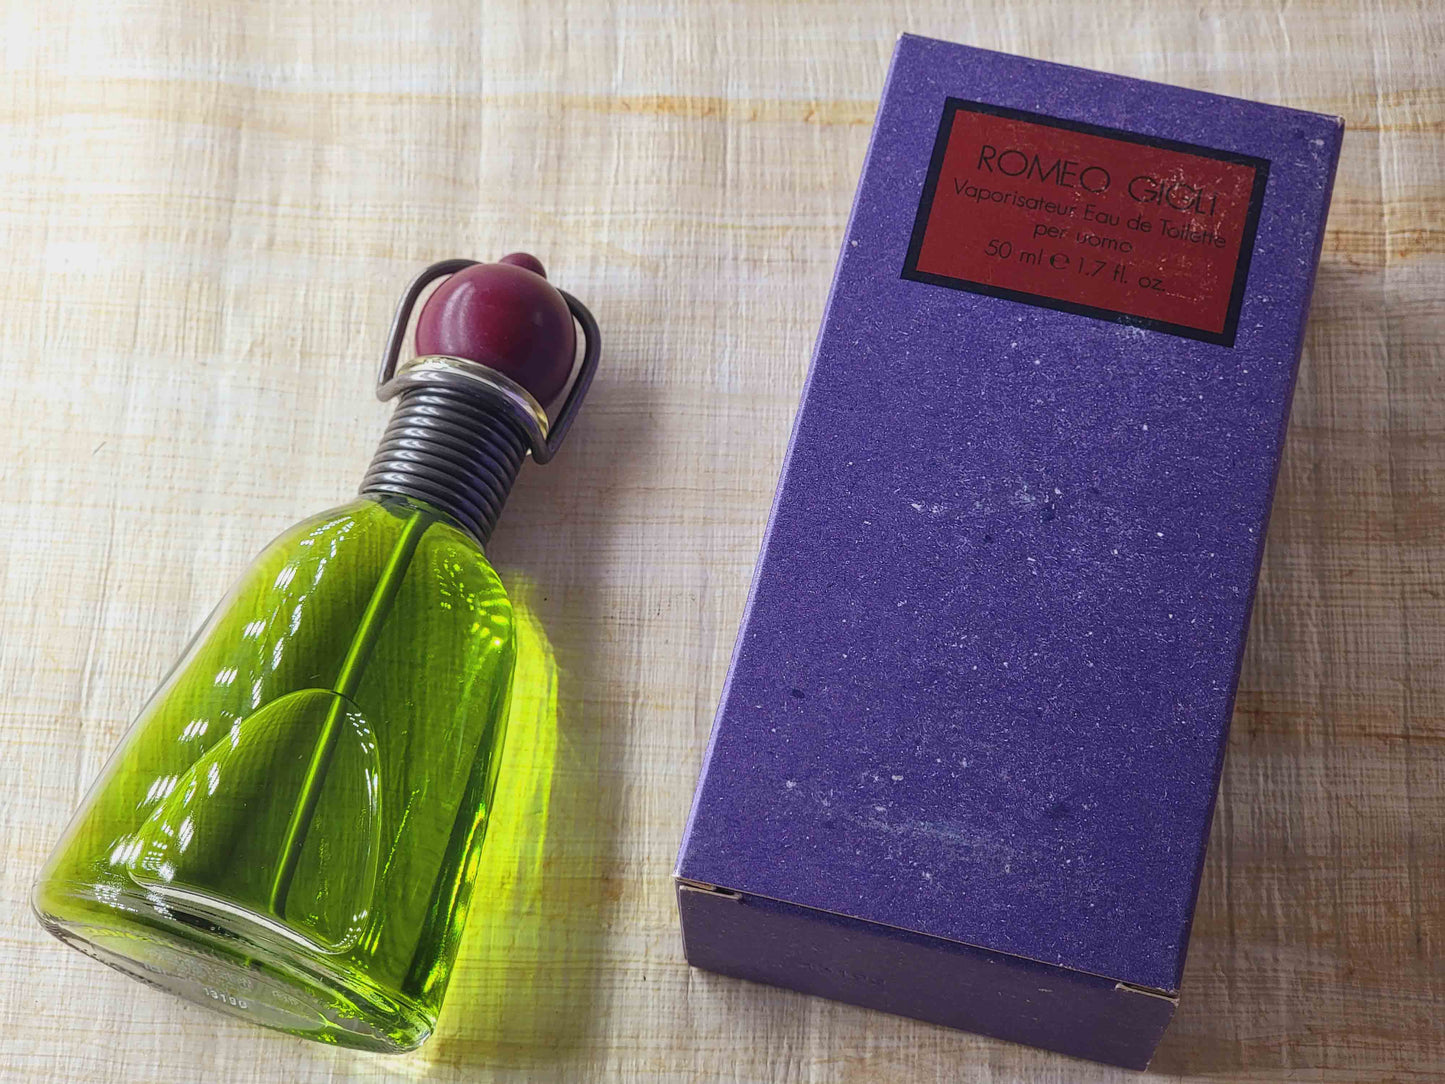 Romeo Gigli Per Uomo EDT Spray 100 ml 3.4 oz Or 50 ml 1.7 oz, Vintage, Rare